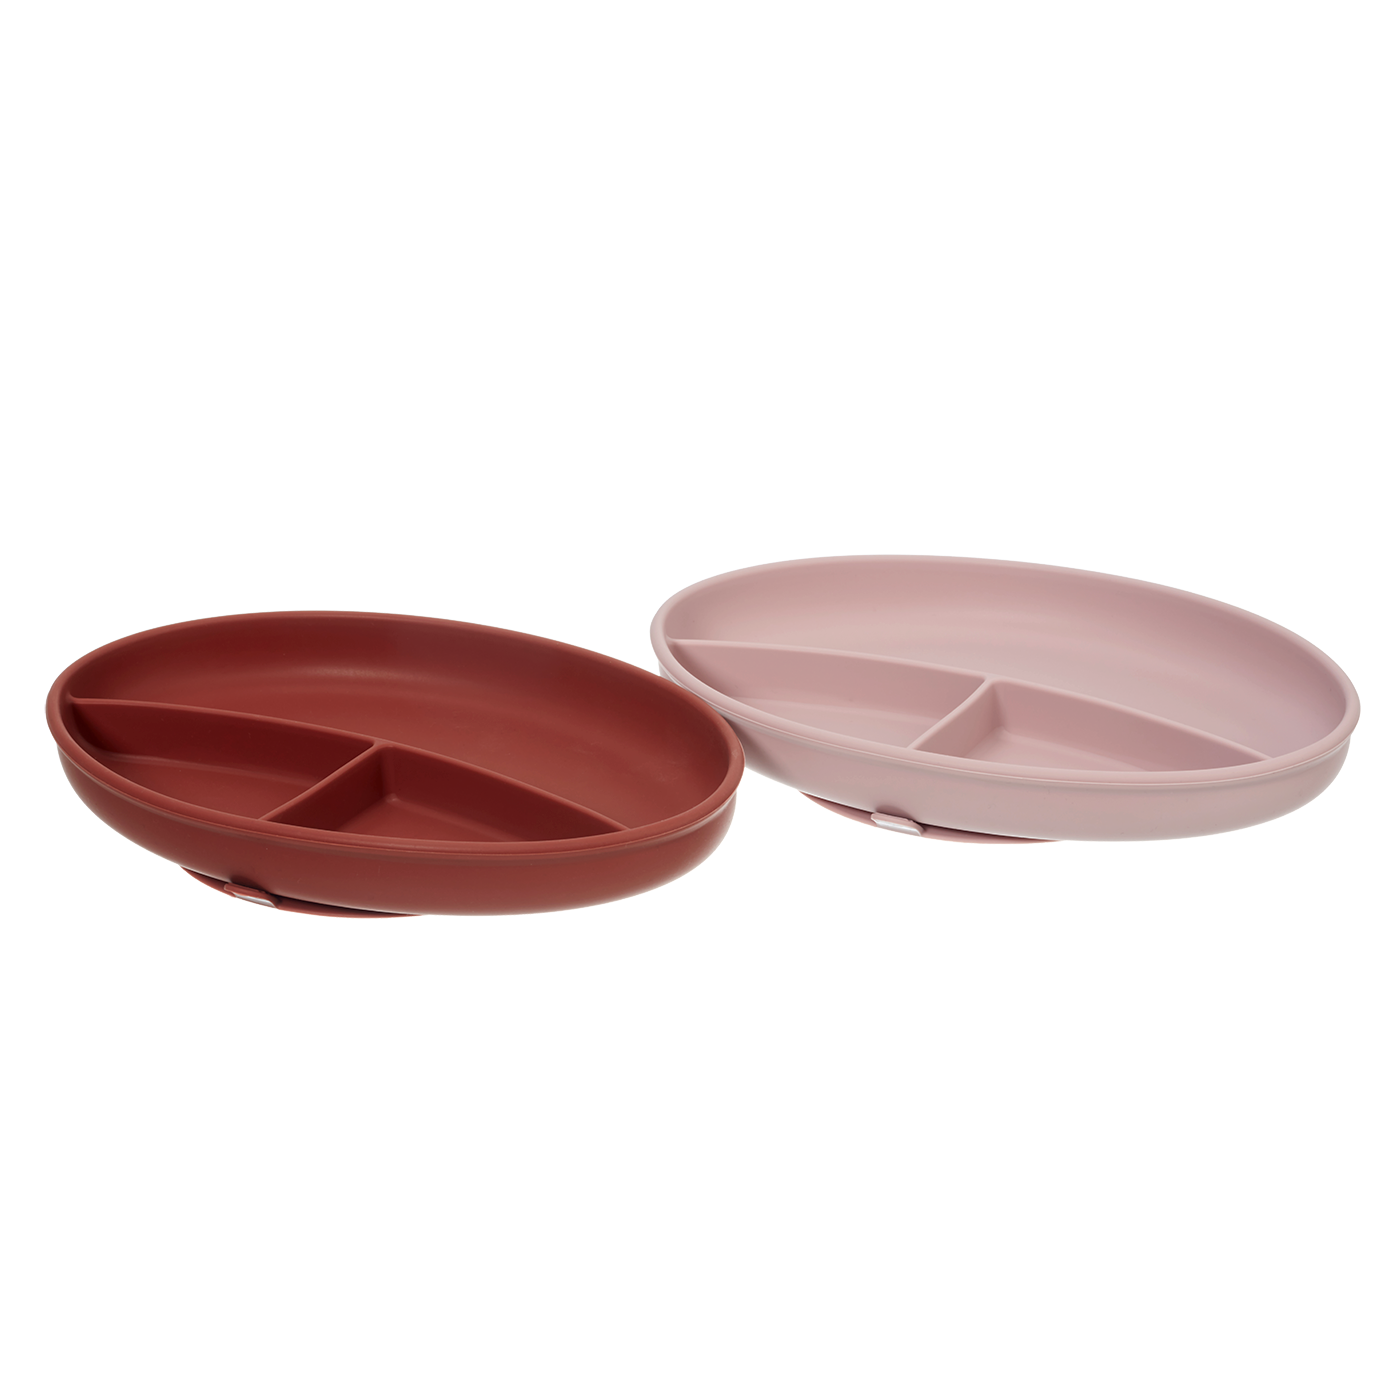 Rebjoorn - Sugplatta röd och rosa 2-paket